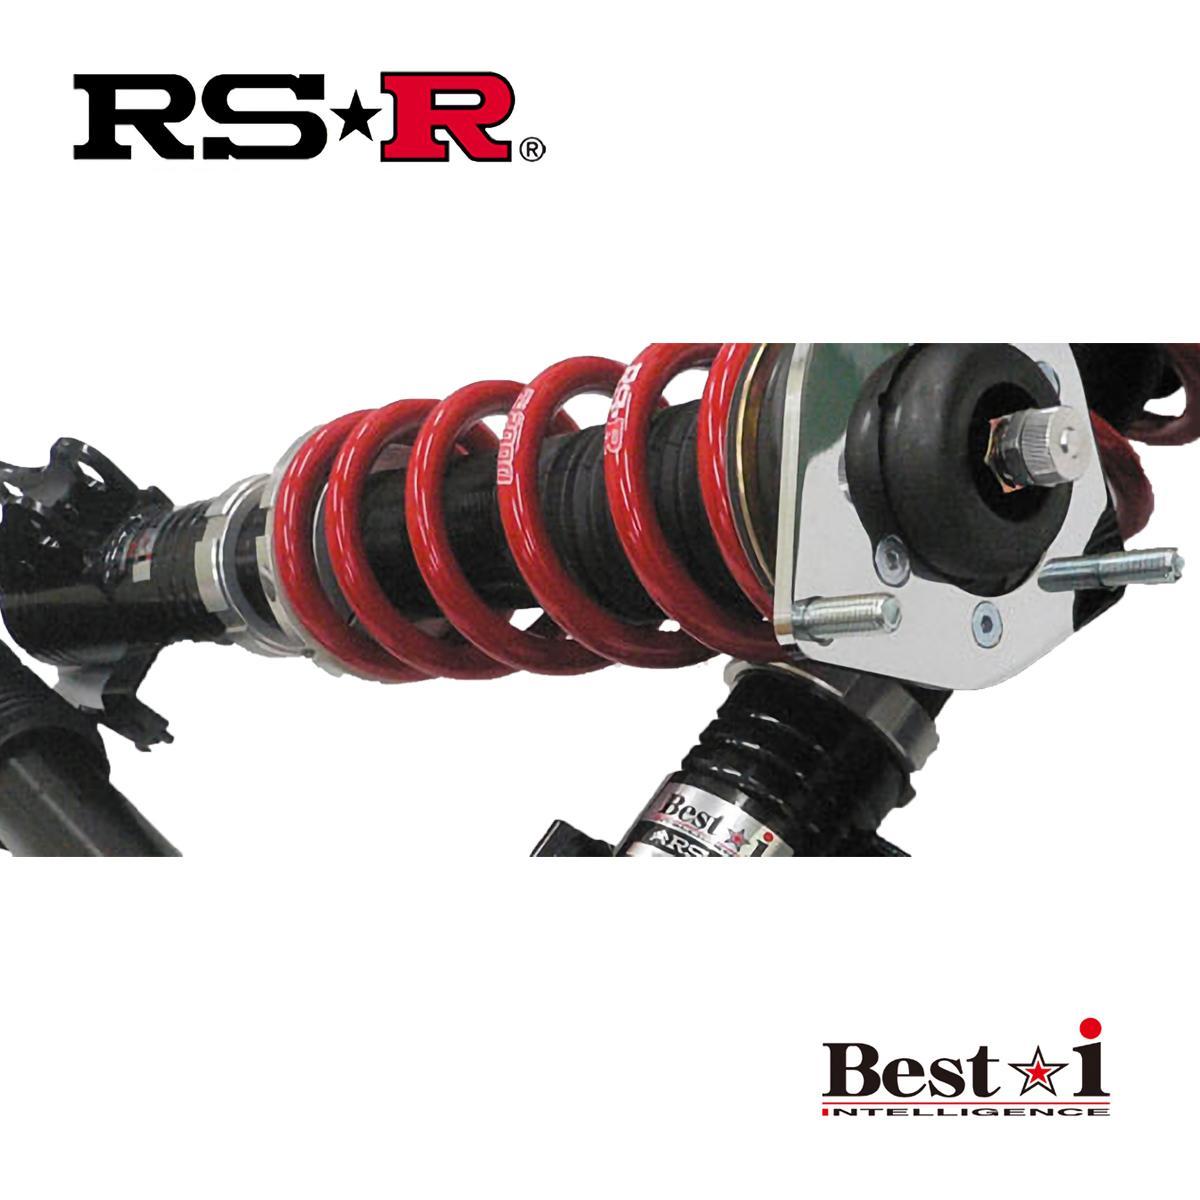 RSR リーフ ZE1 車高調 リア車高調整:スペーサー式 BIN502M RS-R Best-i ベストi_画像1